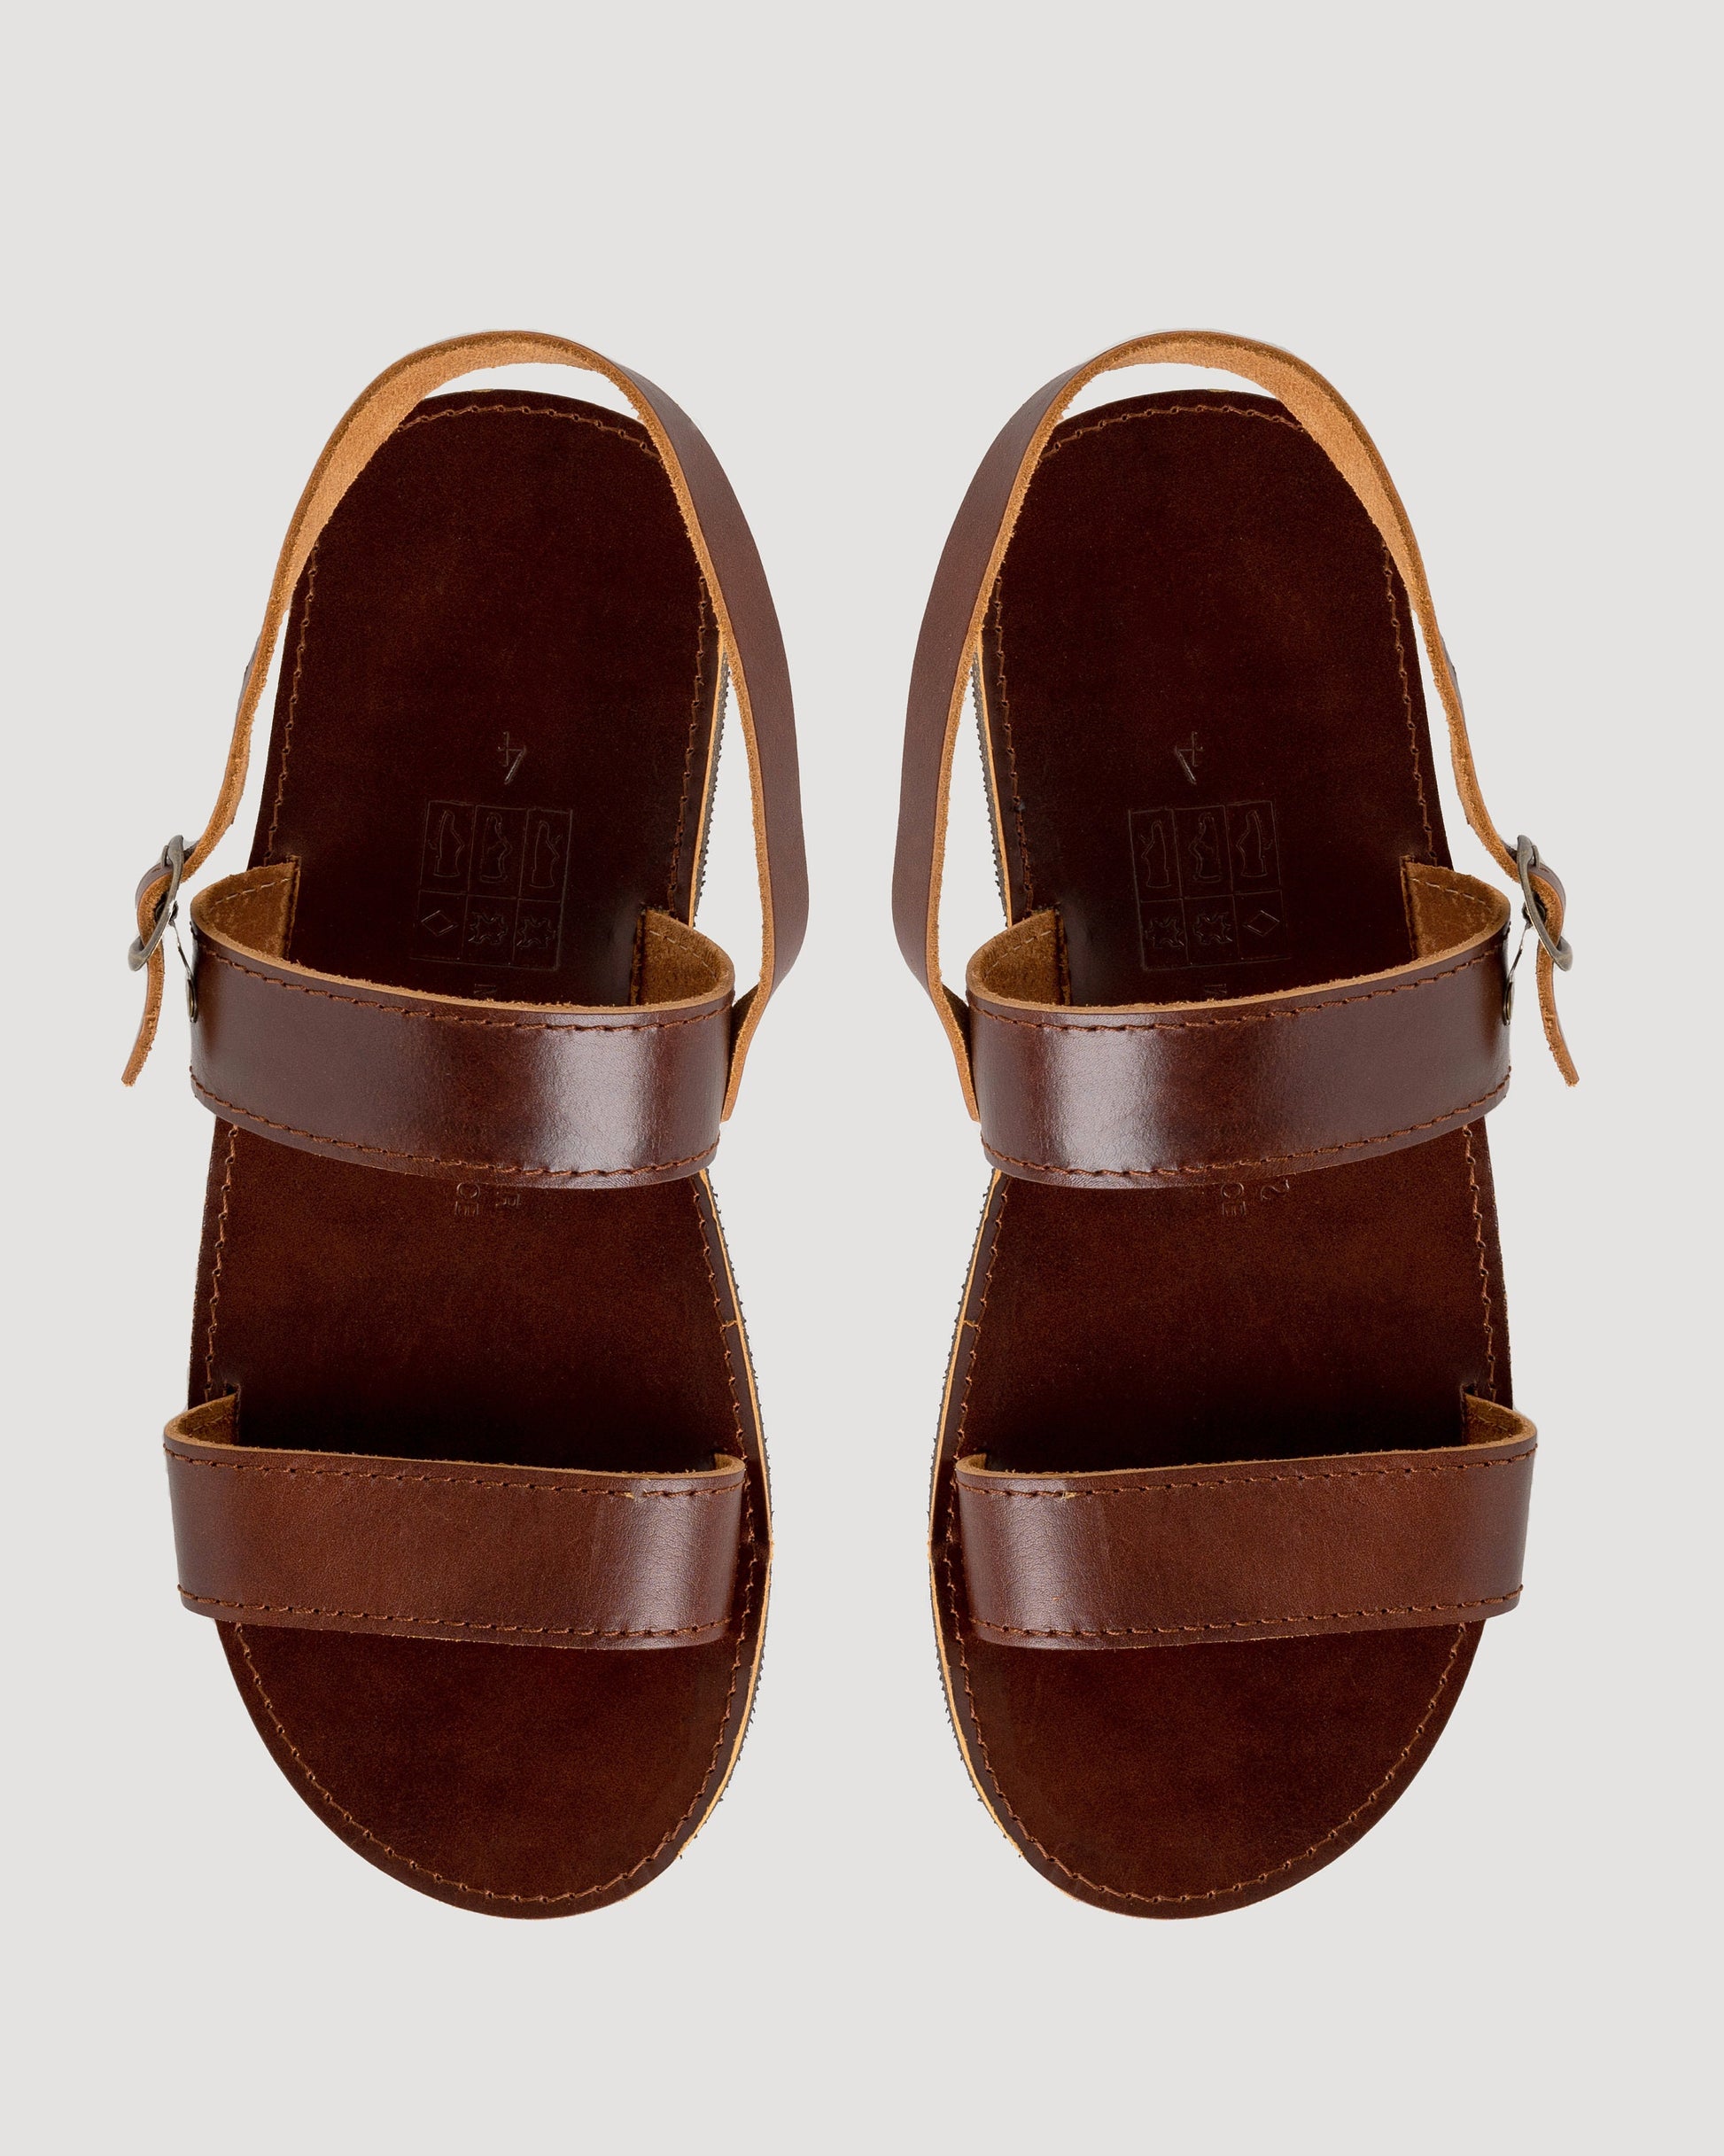 Μens leather sandals, Greek leather sandals, Brown strappy sandals, Flat mens leather sandals